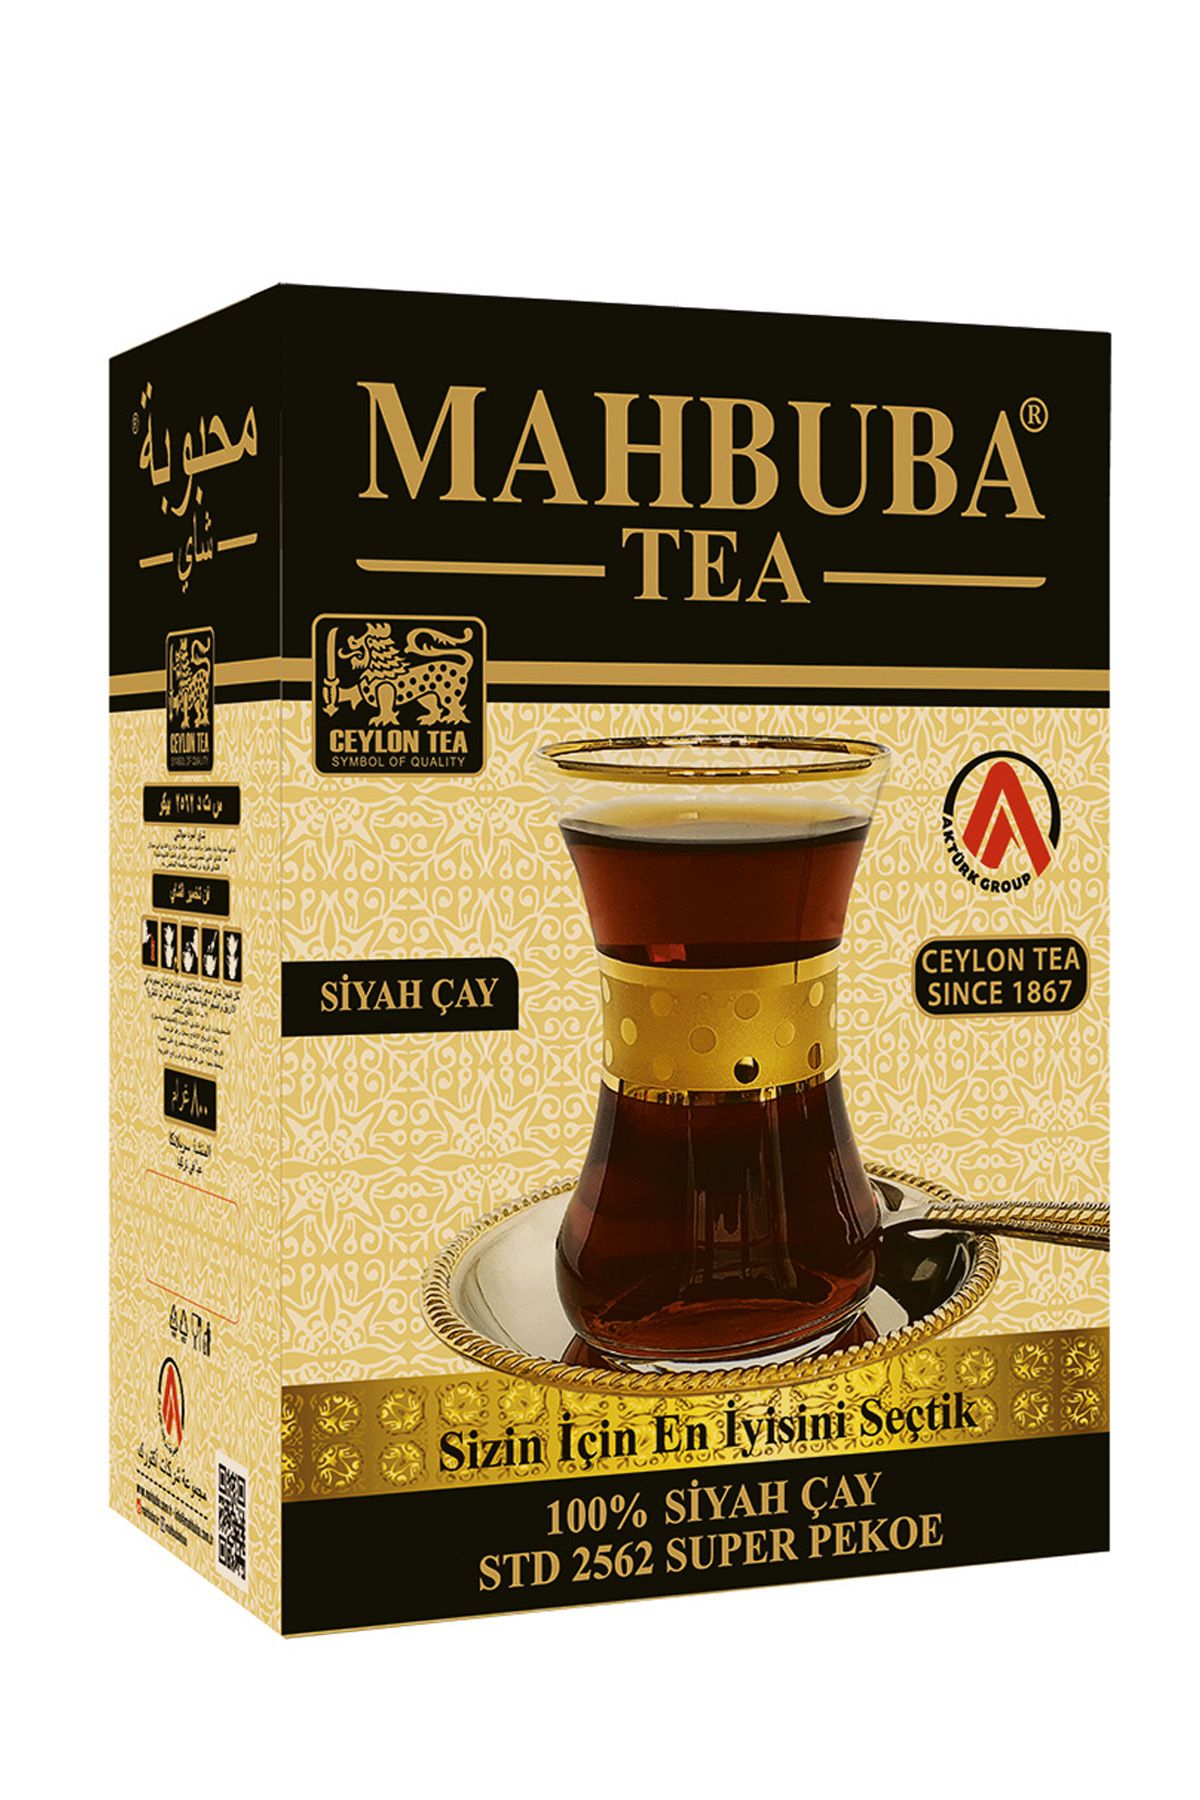 Mahbuba Tea Std 2562 Super Pekoe Ithal Seylan Sri Lanka Ceylon Kaçak Siyah Yaprak Çayı 800gr